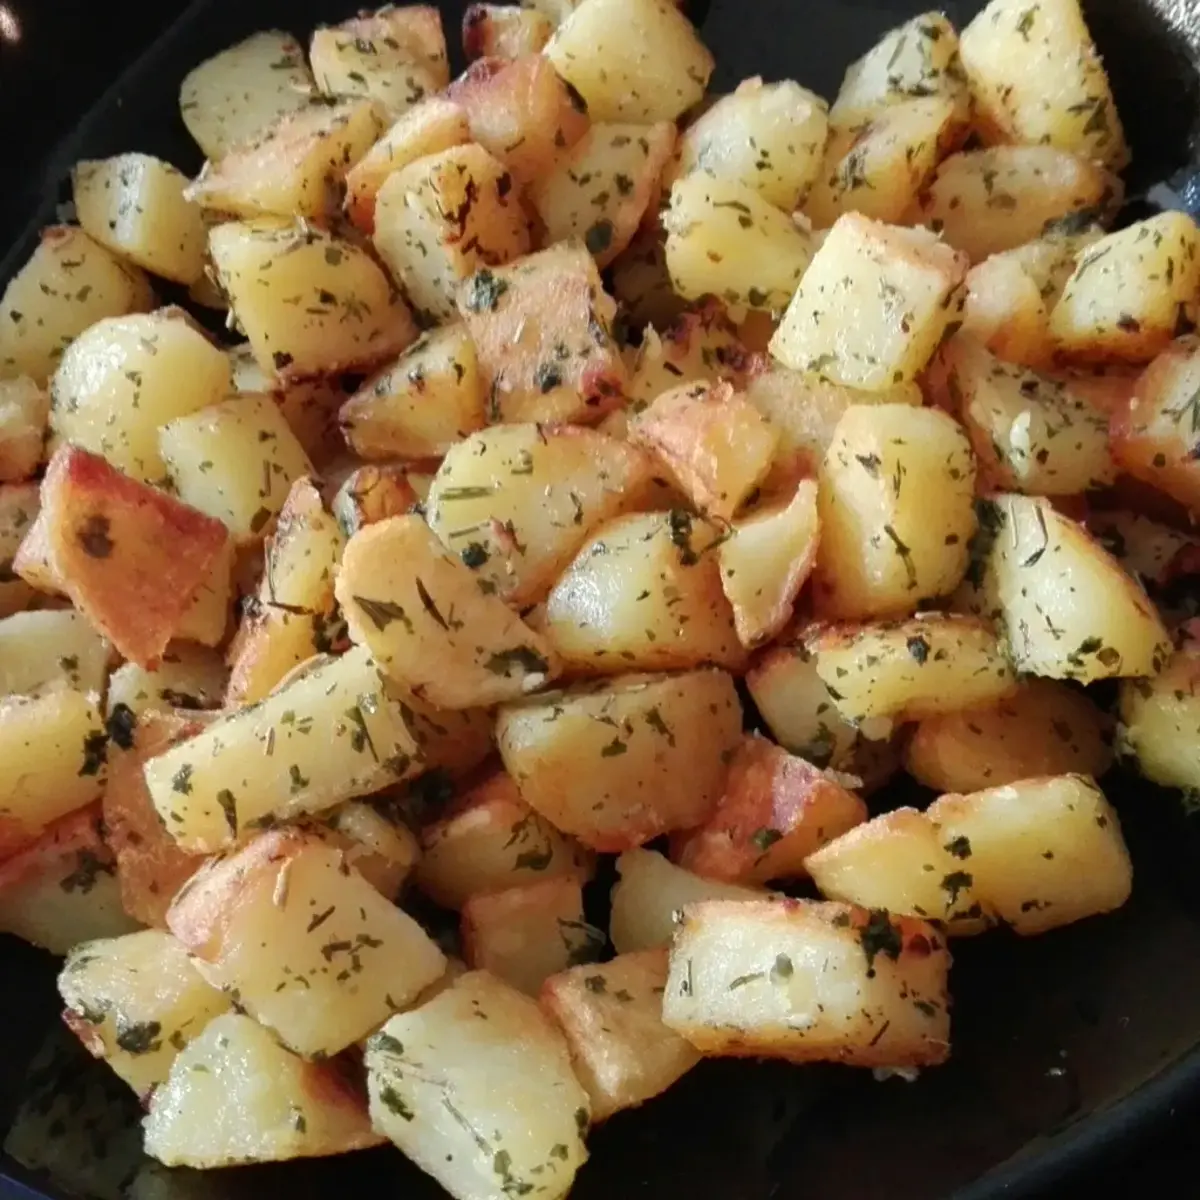 patates sautes a la poele comment rendre les patates croustillantes